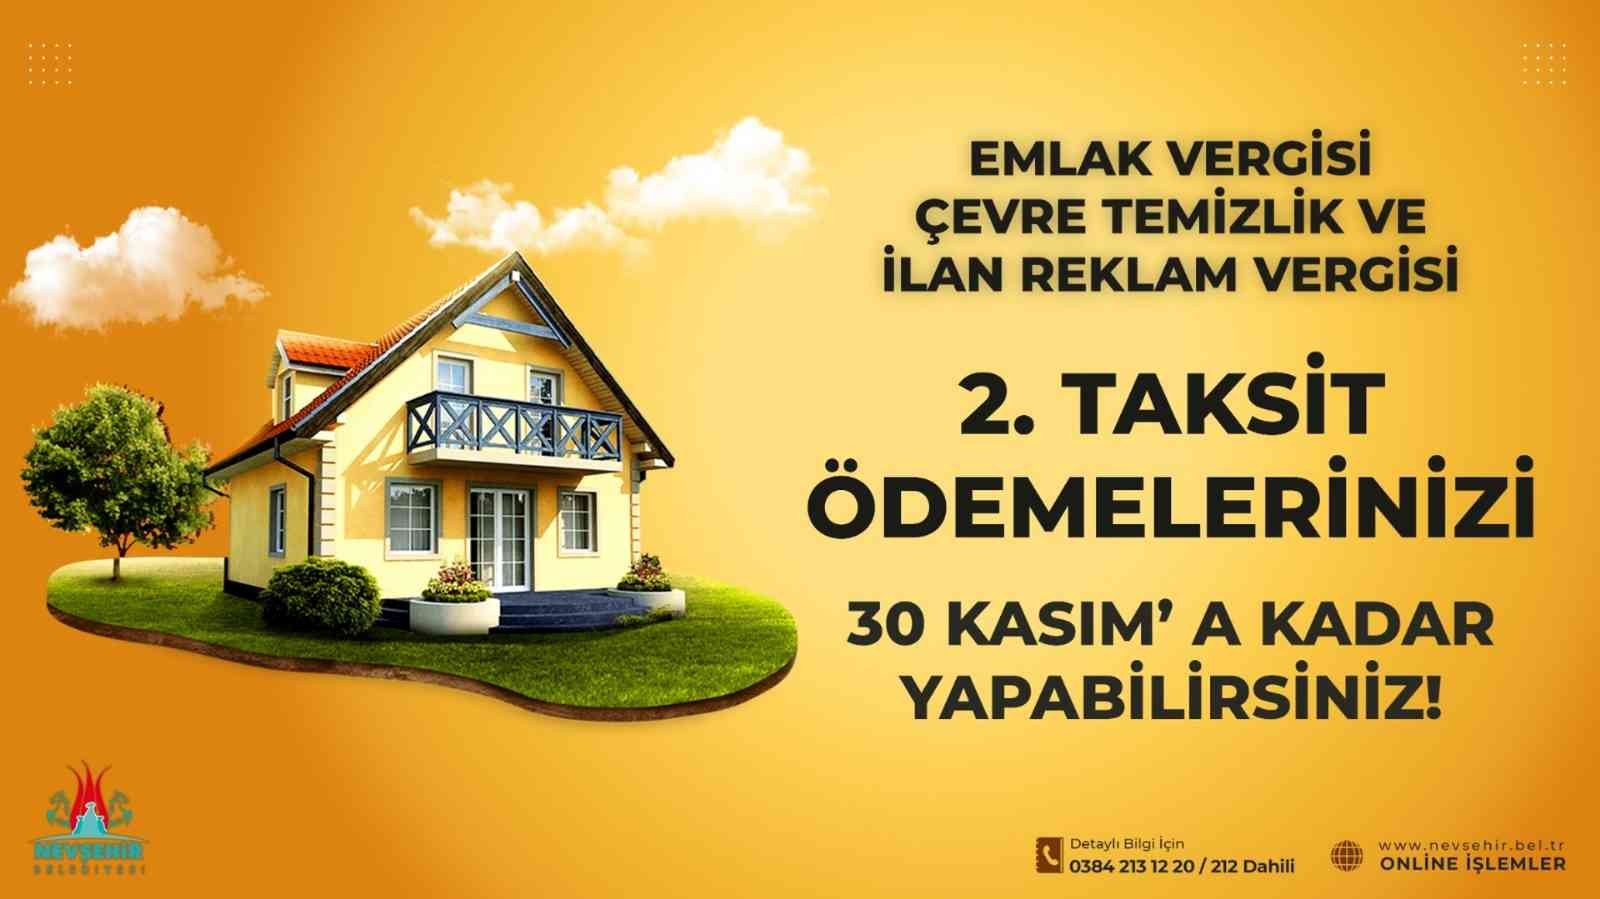 Nevşehir Belediyesi: “Emlak, çevre temizlik ve ilan reklam verginizi ödemeyi unutmayın”